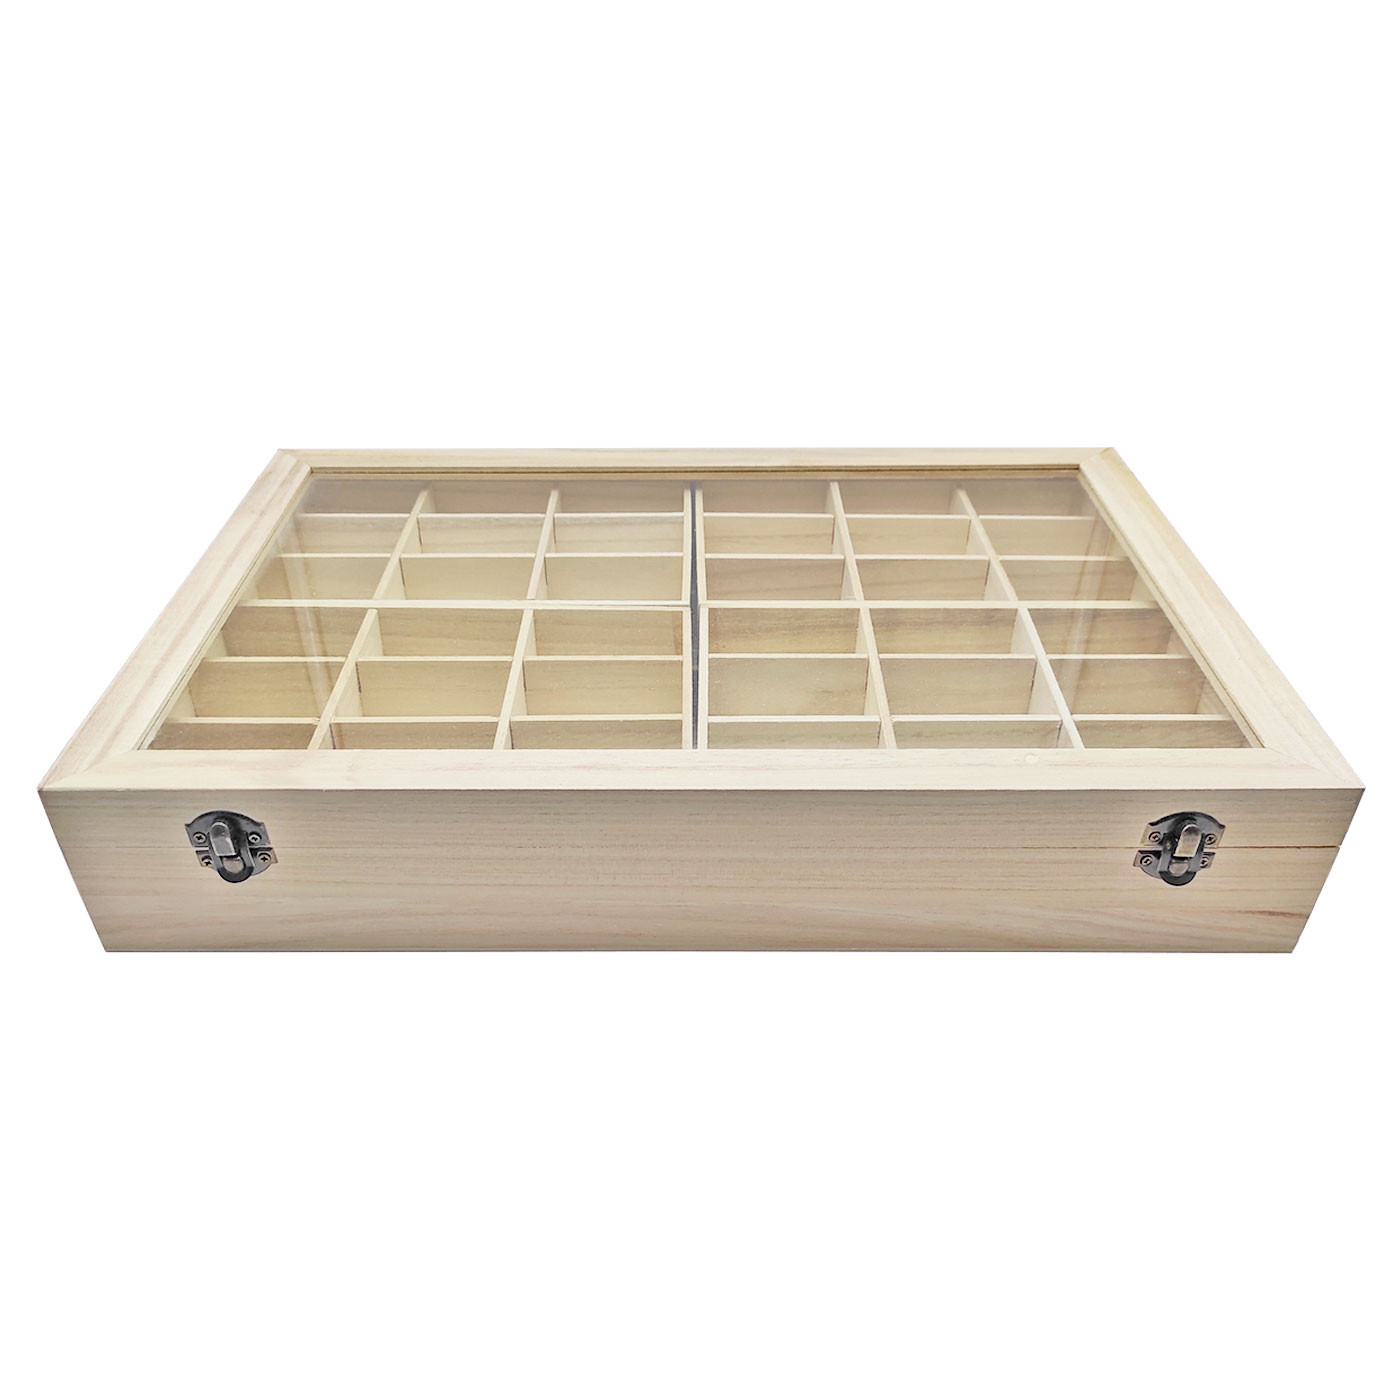 Tradineur - Caja de madera alargada con cierre metálico, madera natural,  almacenaje joyas, manualidades, decoración - 19,8 x 6,3